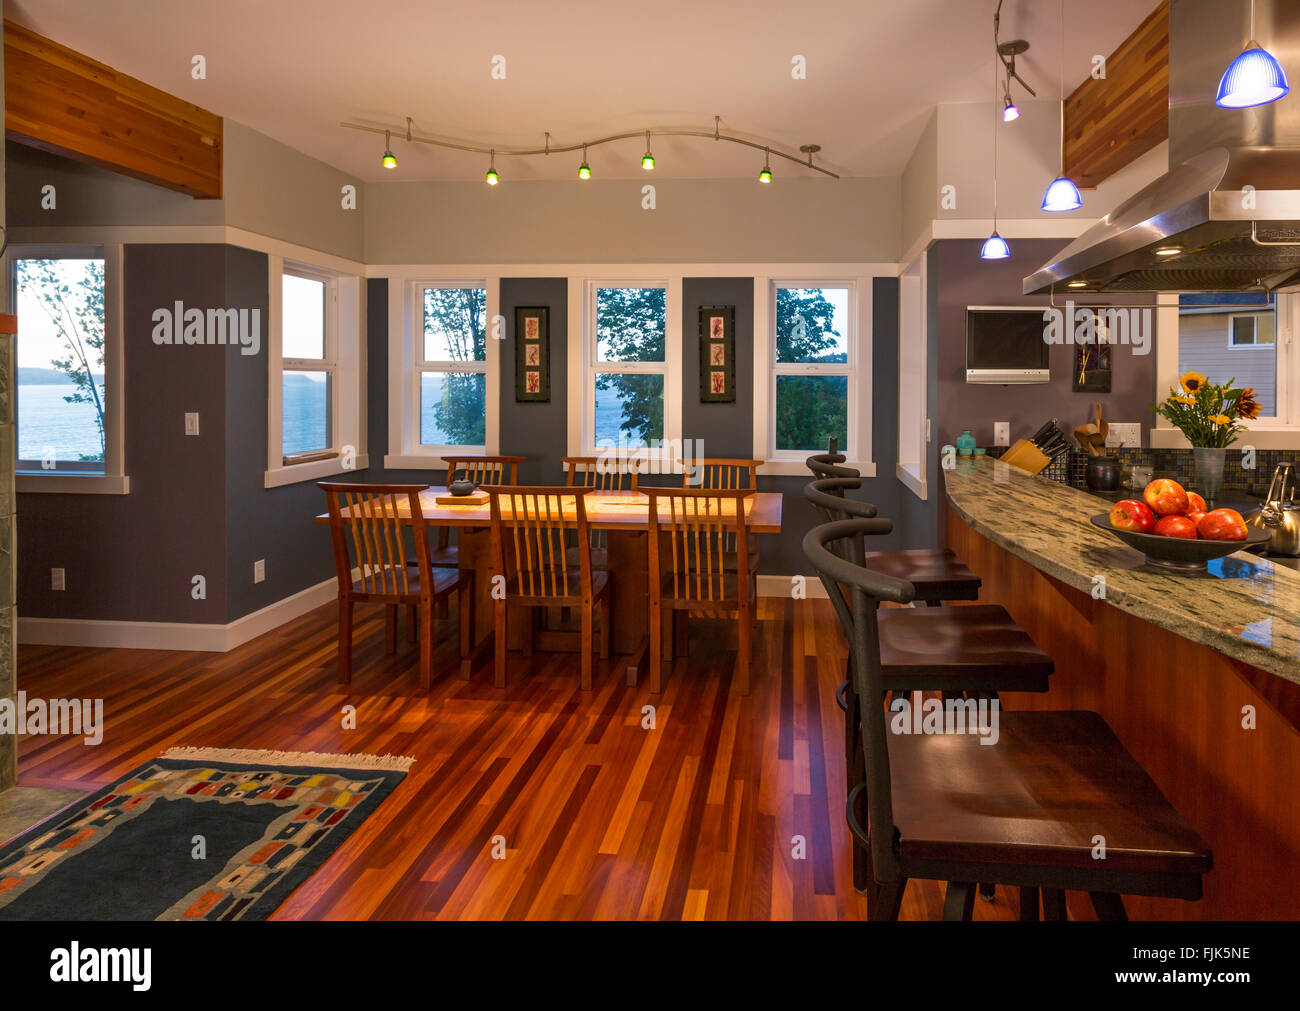 Aprire il piano cucina personalizzata bar per la prima colazione e pranzo in contemporaneo ed elegante arredamento con pavimenti in legno, finestre di visualizzazione & illuminazione d'accento Foto Stock